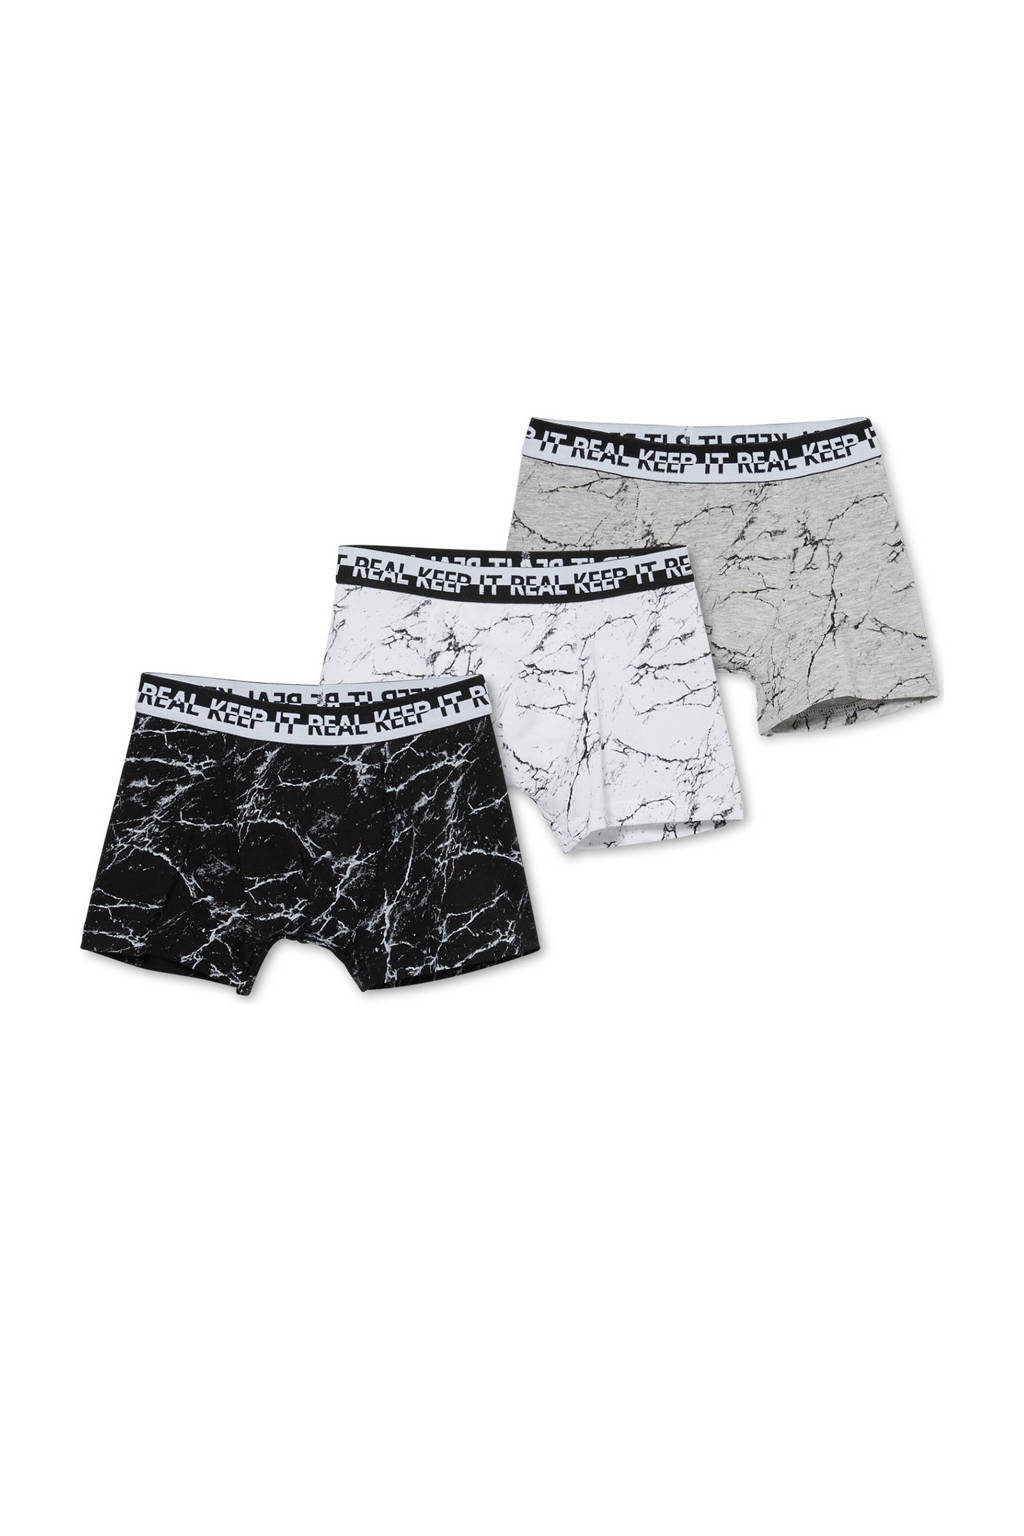 C&A boxershort - set van 3 zwart/wit/grijs, Zwart/wit/grijs